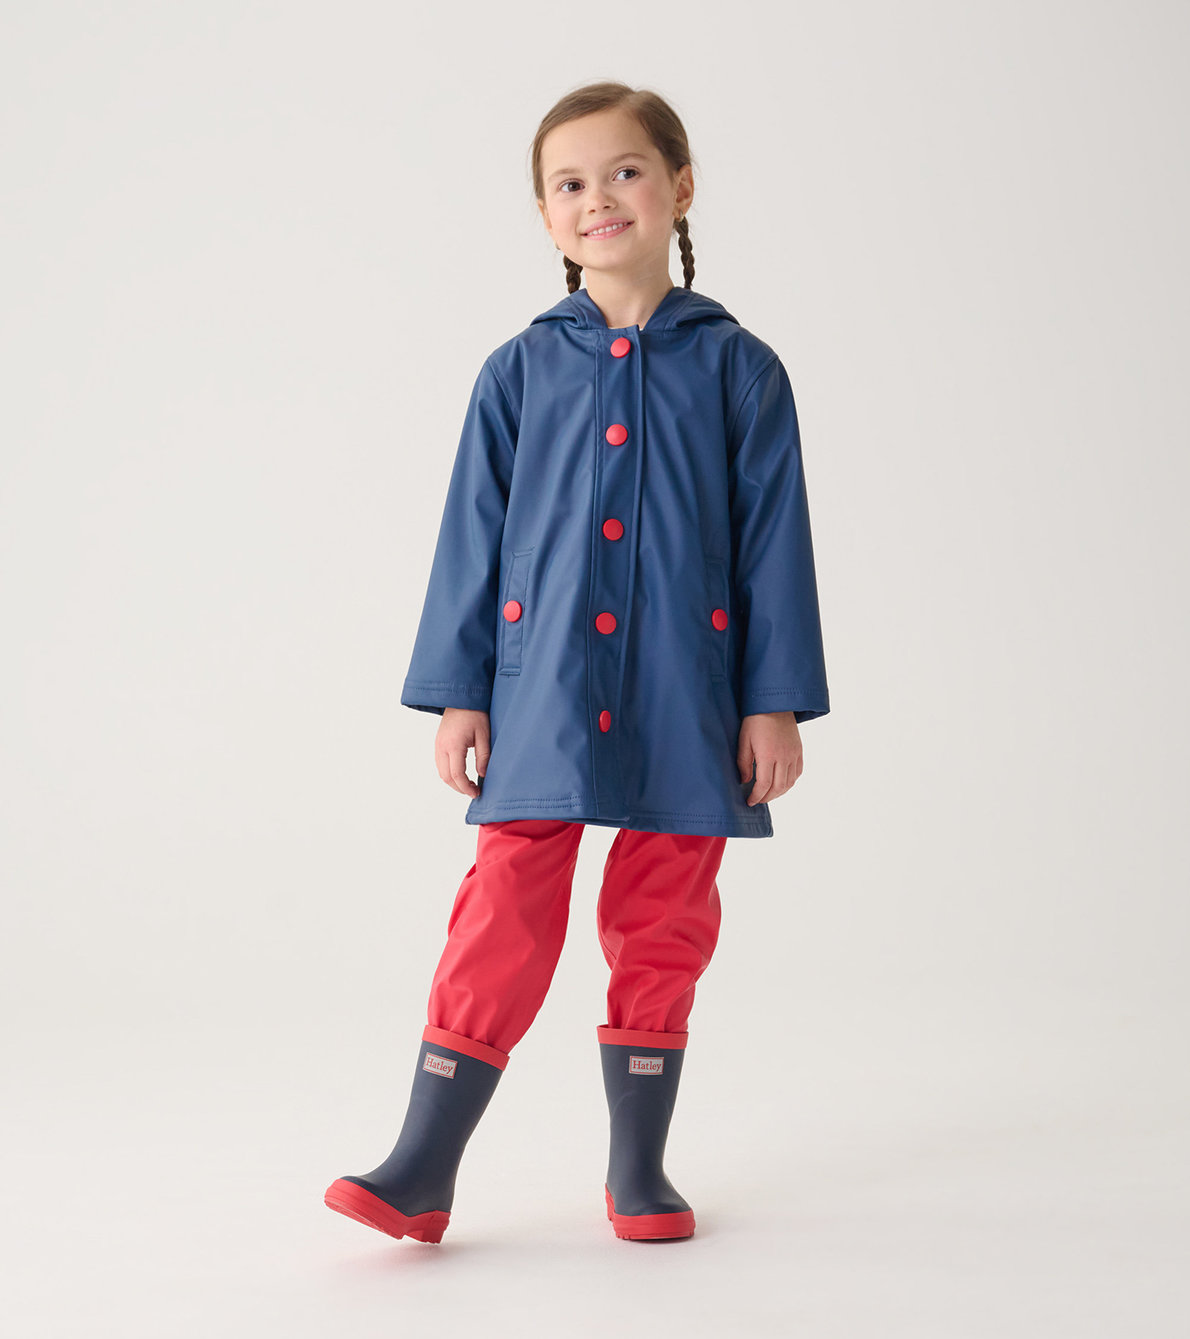 Agrandir l'image de Bottes de pluie au fini mat pour enfant – Bleu marine avec bordures rouges